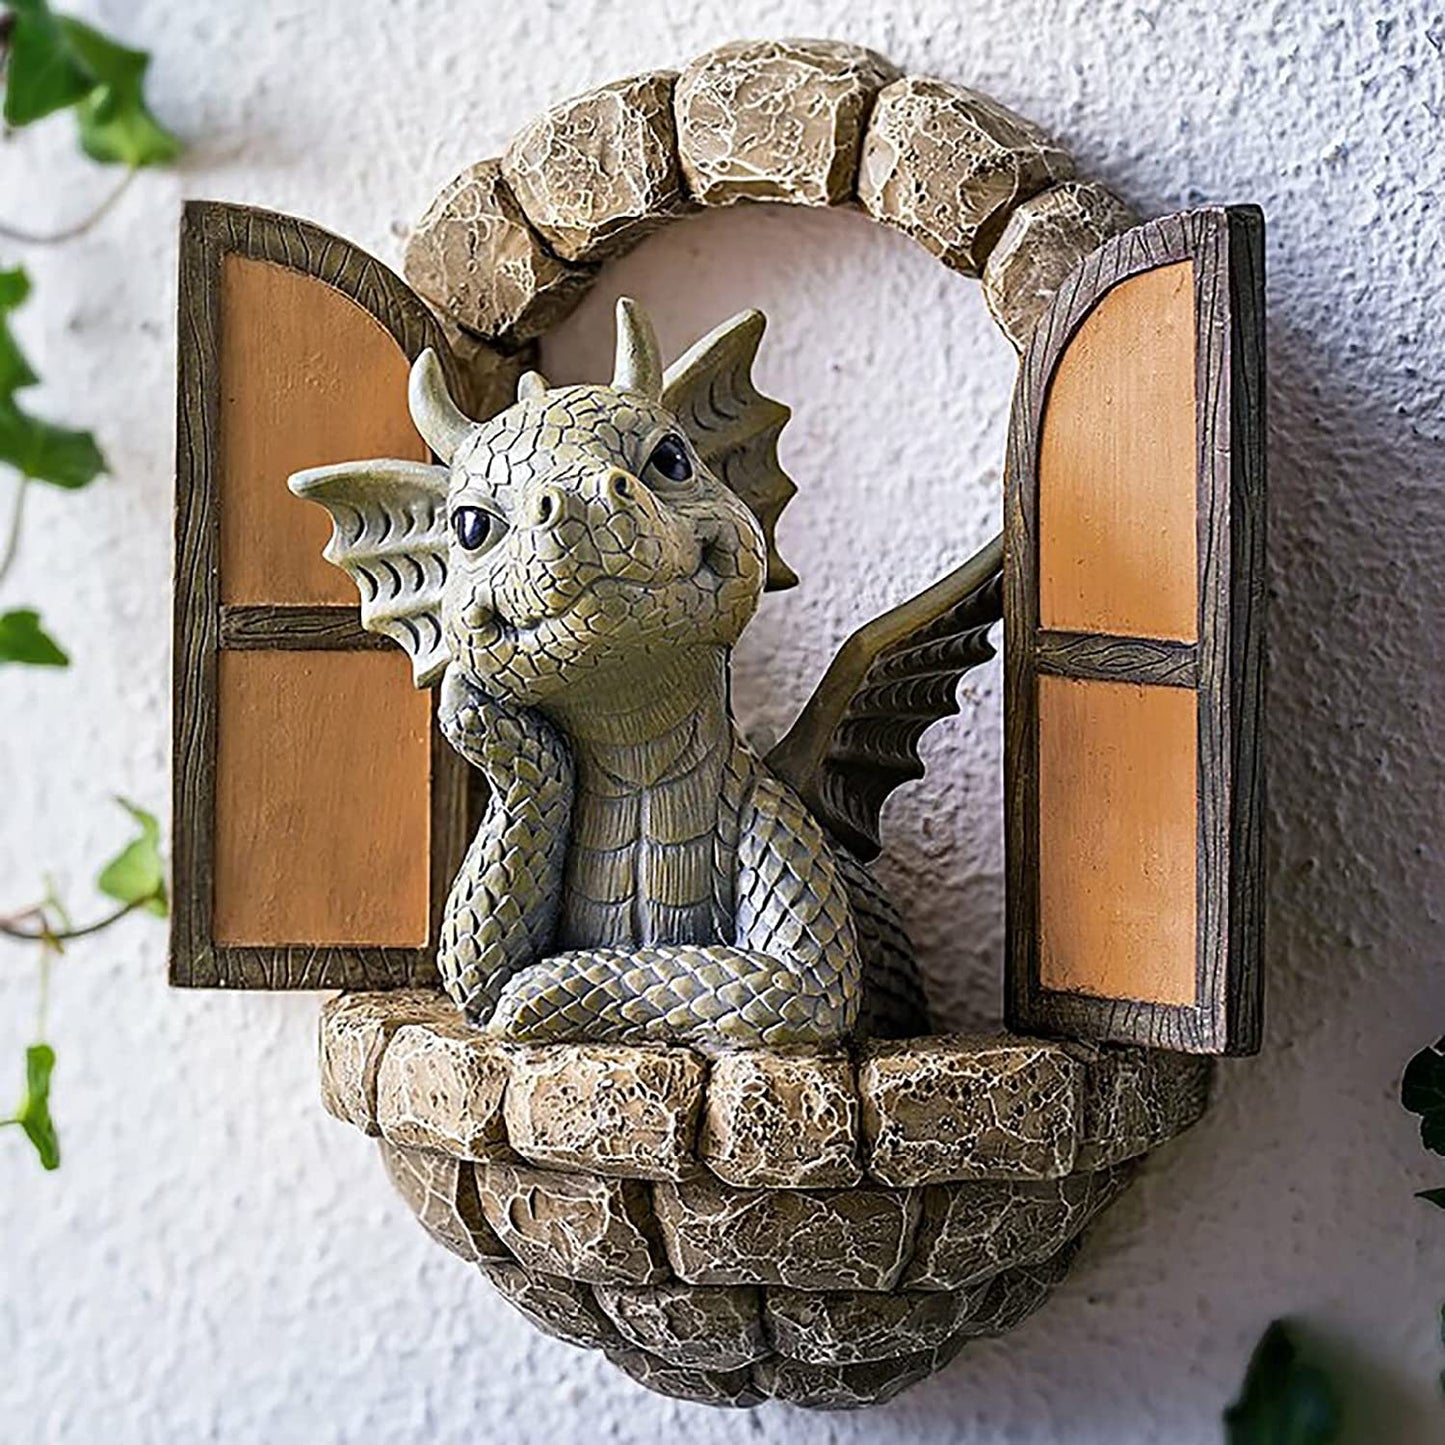 Art Baby Dragon Sculpture Garden/Home Decor